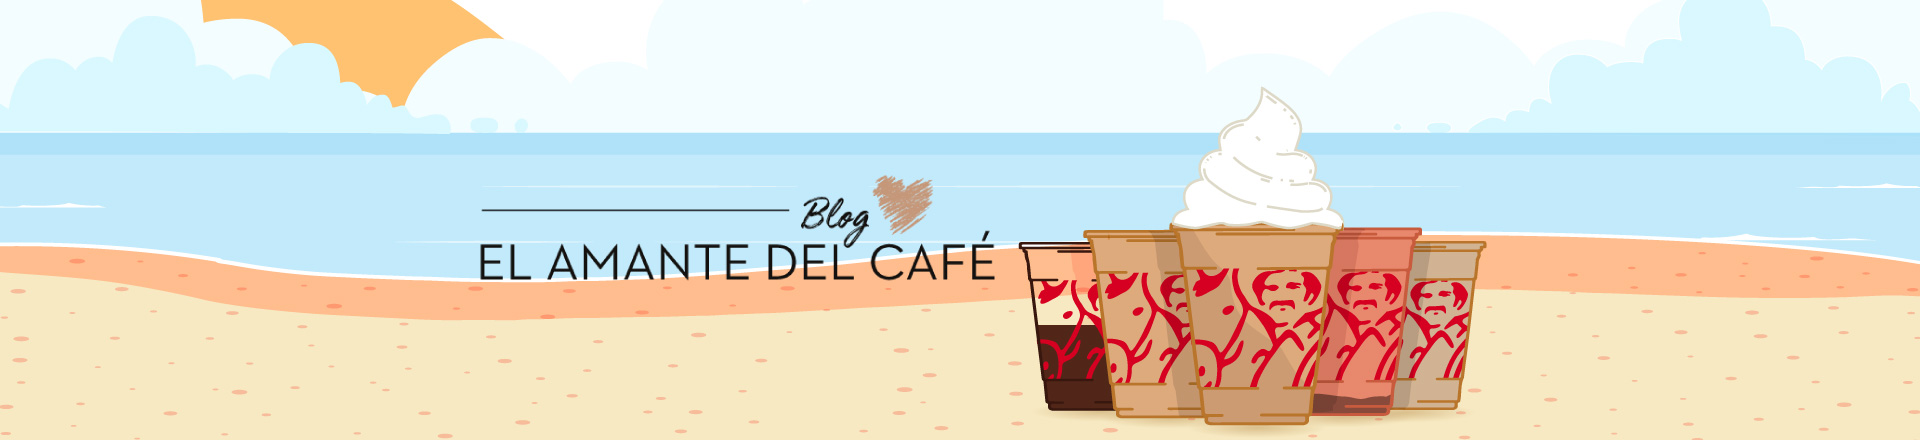 ilustración de diferentes bebidas de café con el logo de Juan Valdez en un fondo que simula una playa y el logo del blog del amante del café